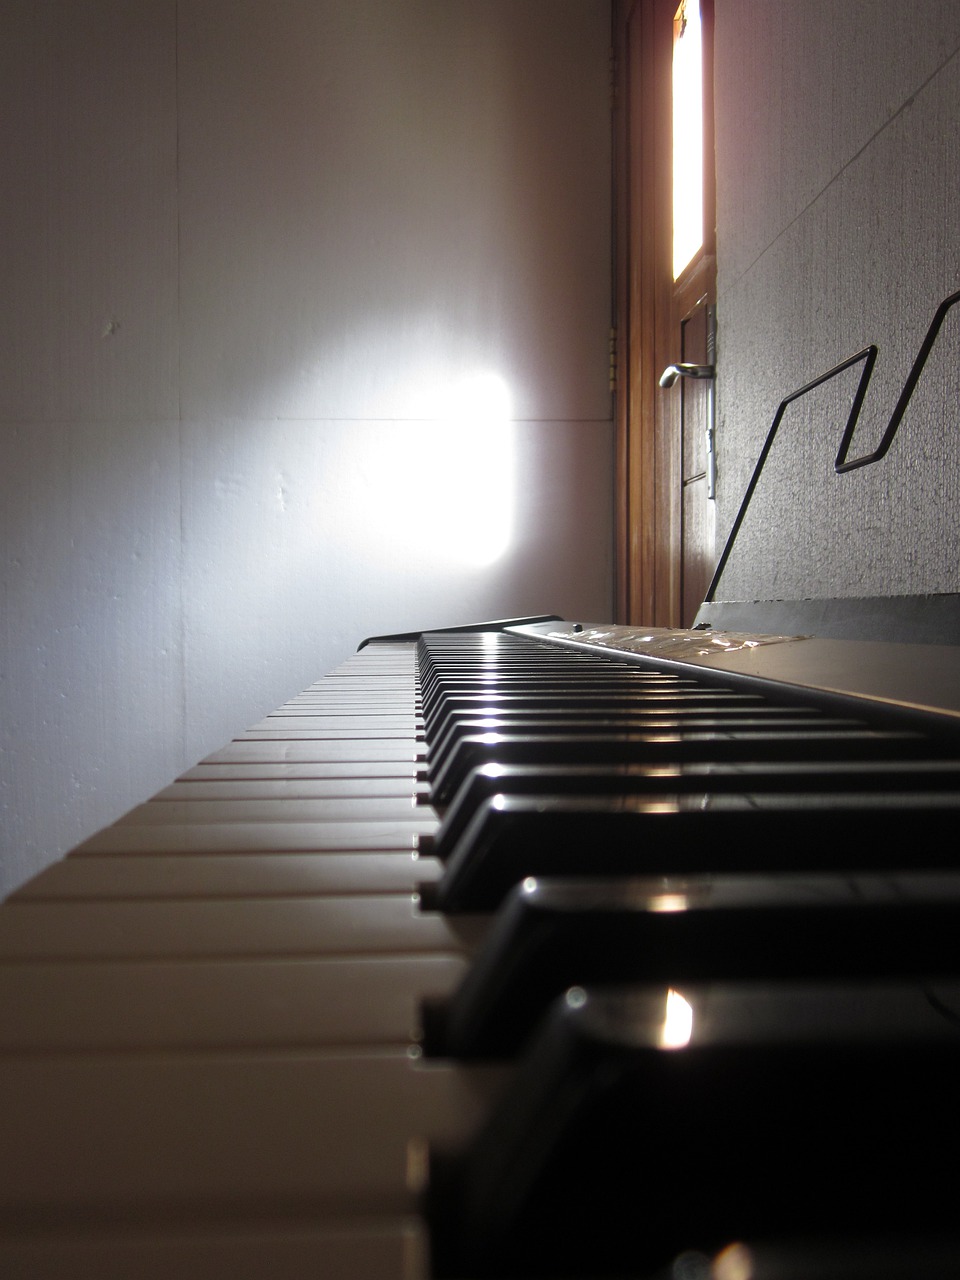 piano  music  keyboard free photo